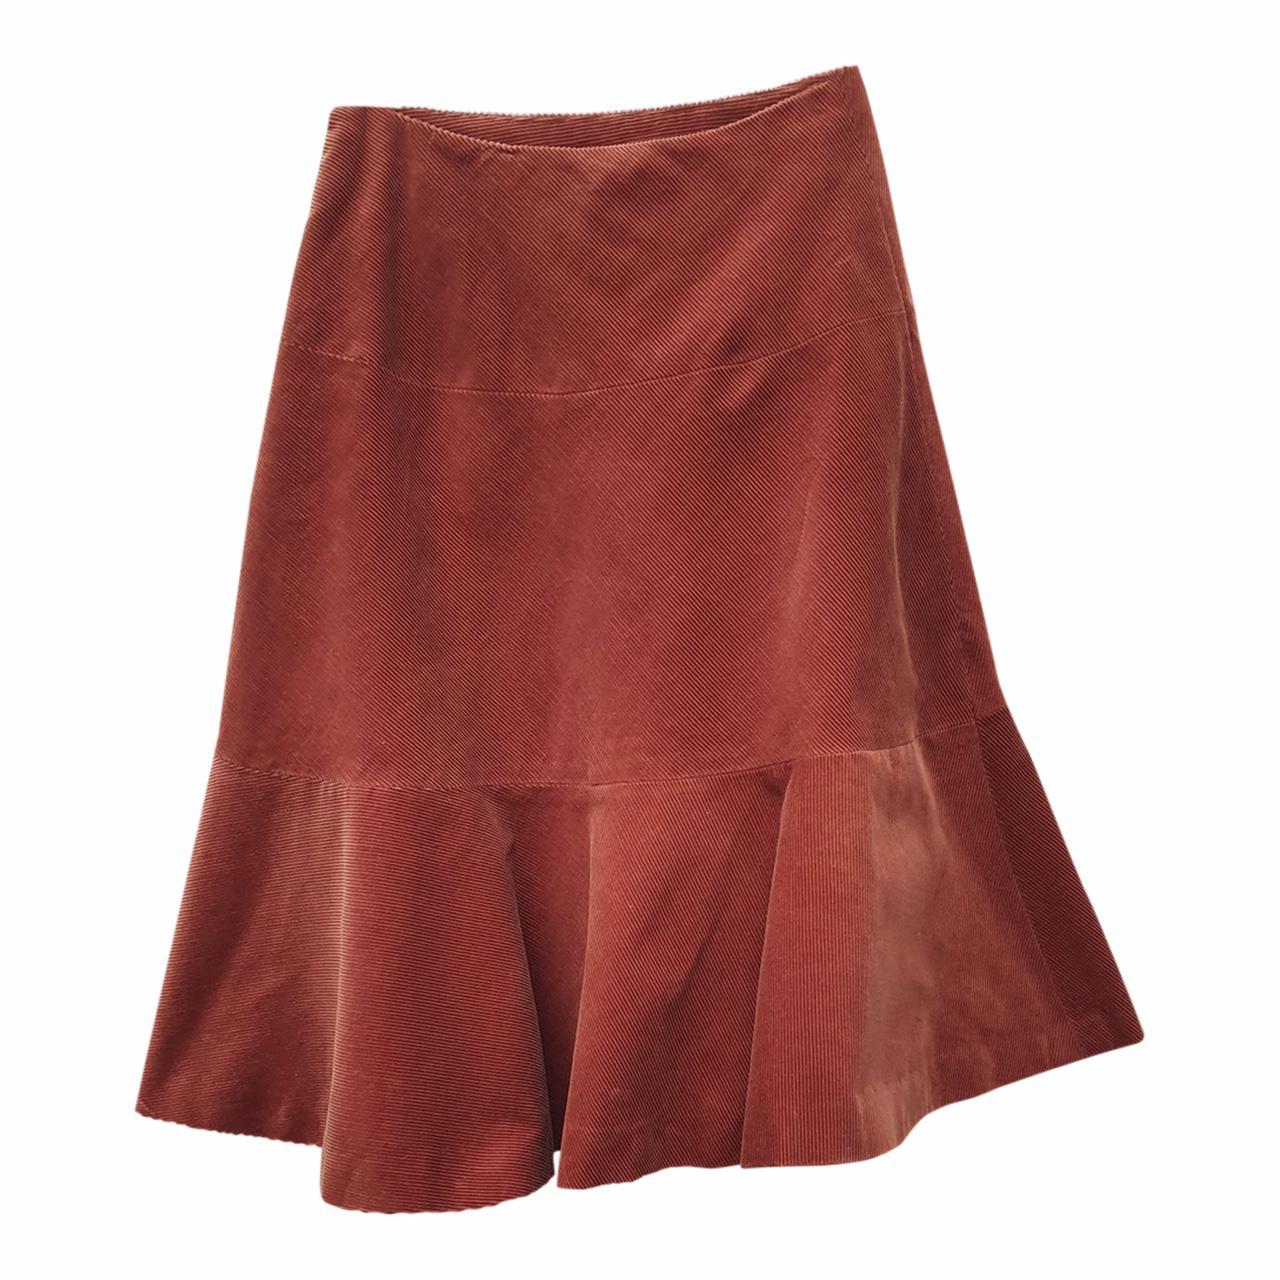 Women's Orange and Burgundy Skirt (4)